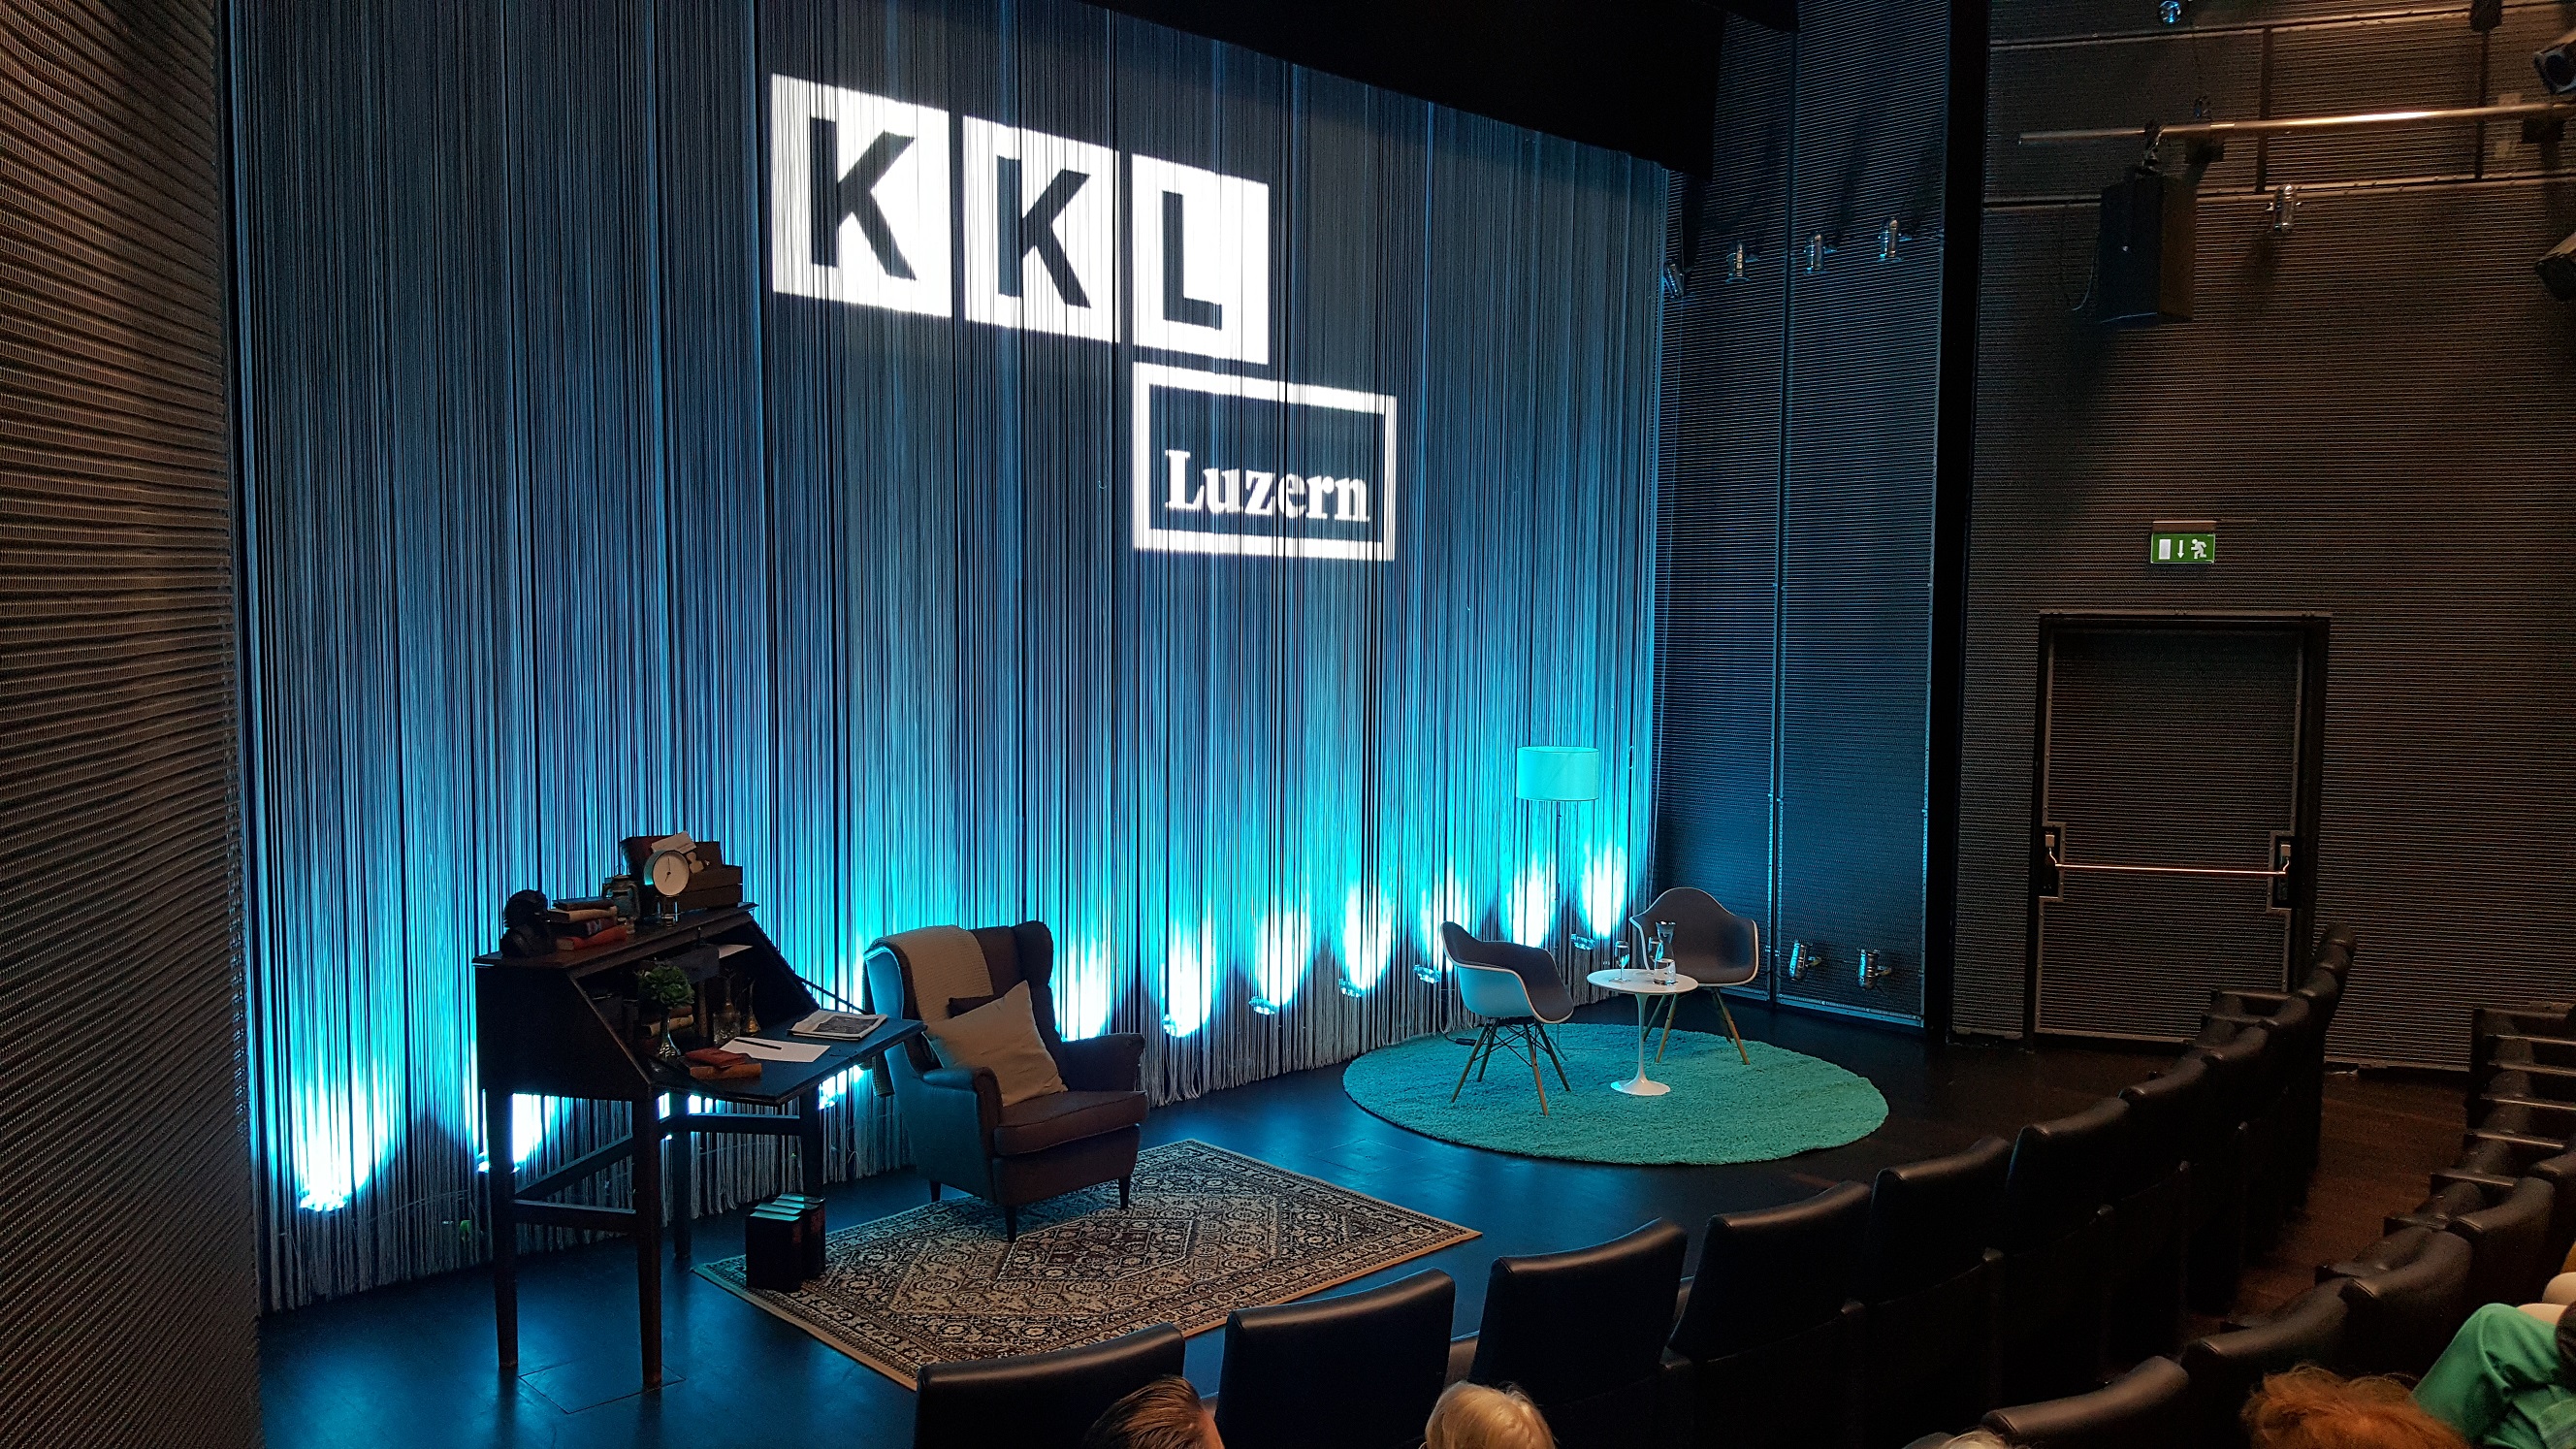 Bühne des Auditoriums im KKL Luzern mit Fadenvorhang und Stühlen für Lesung